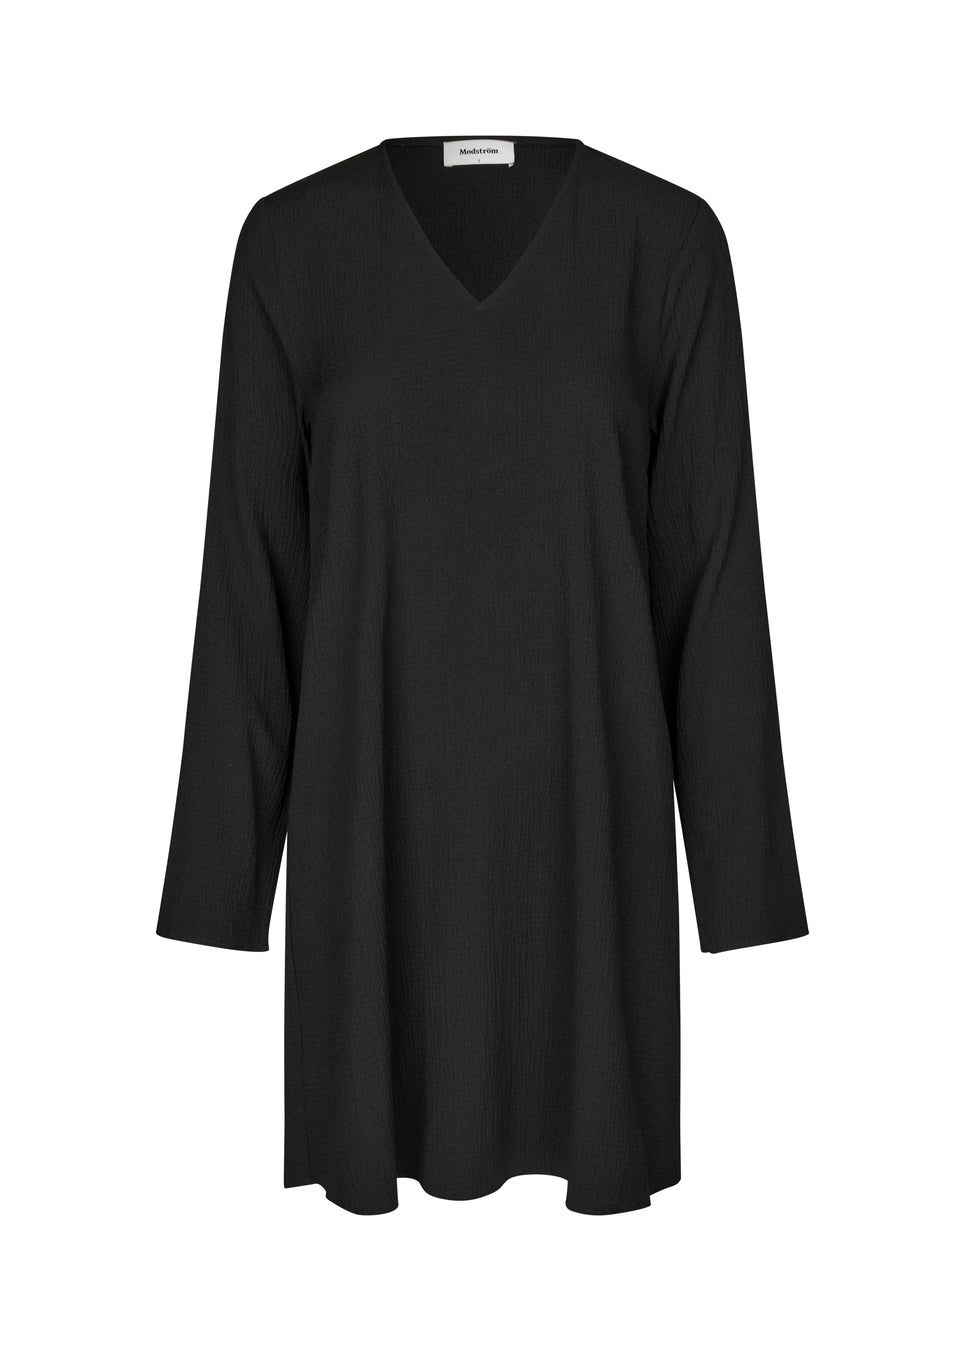 Modström - HiltonMD dress - Black